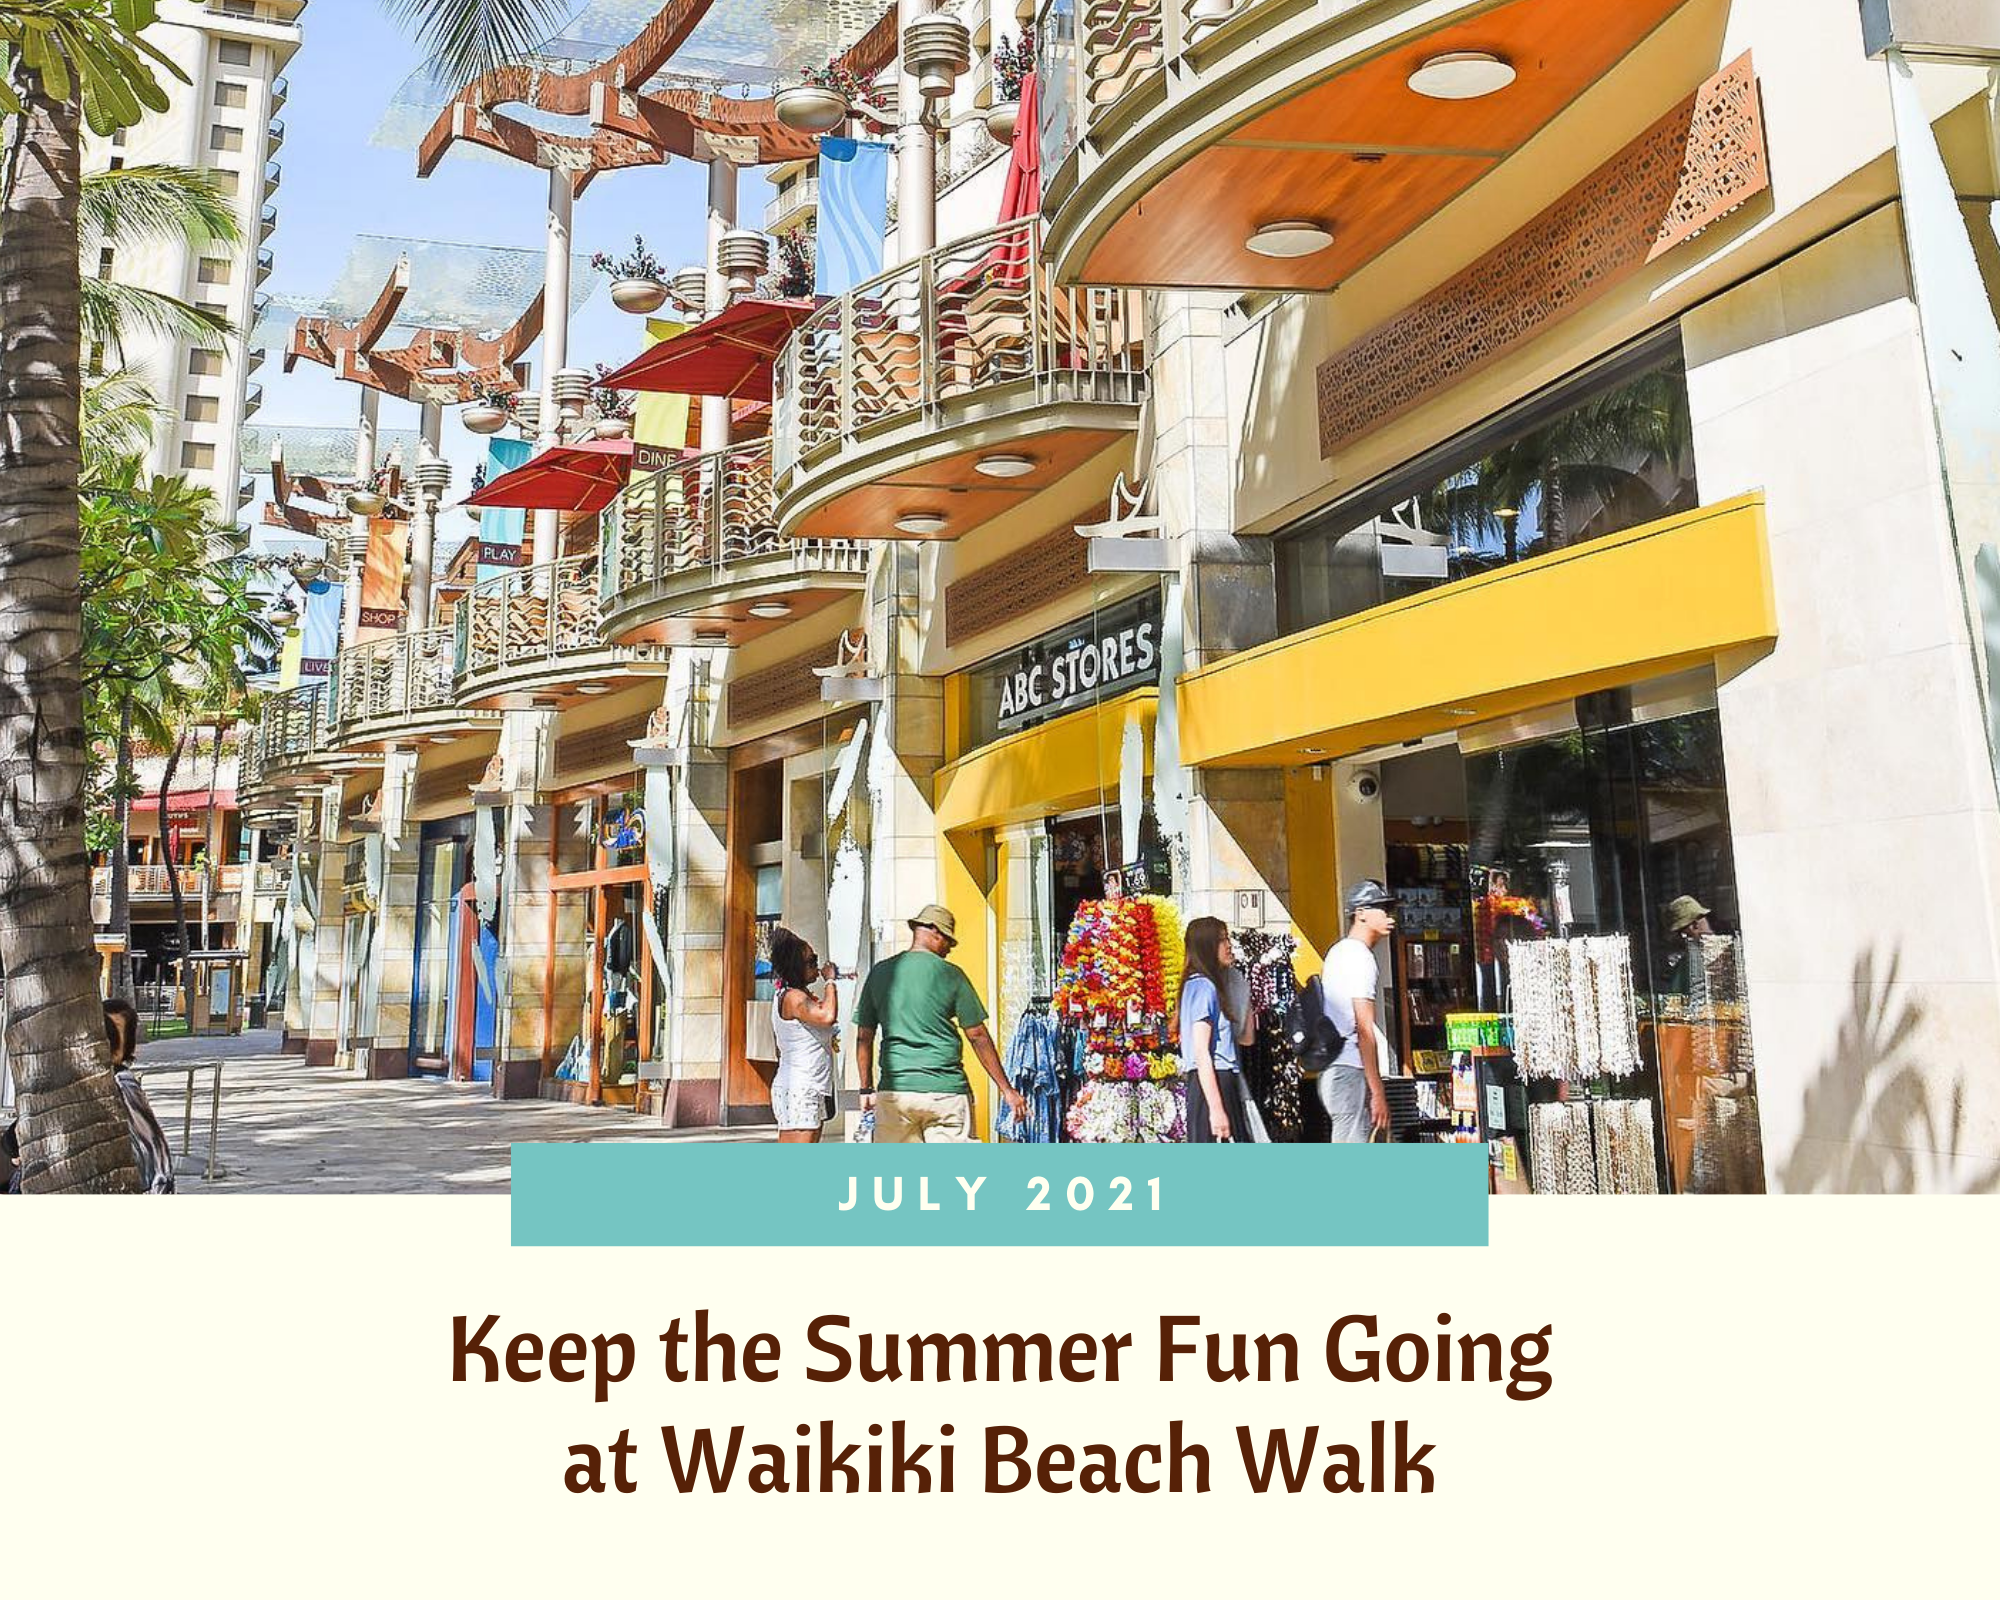 July 2021: Keep the Summer Fun Going at Waikiki Beach Walk